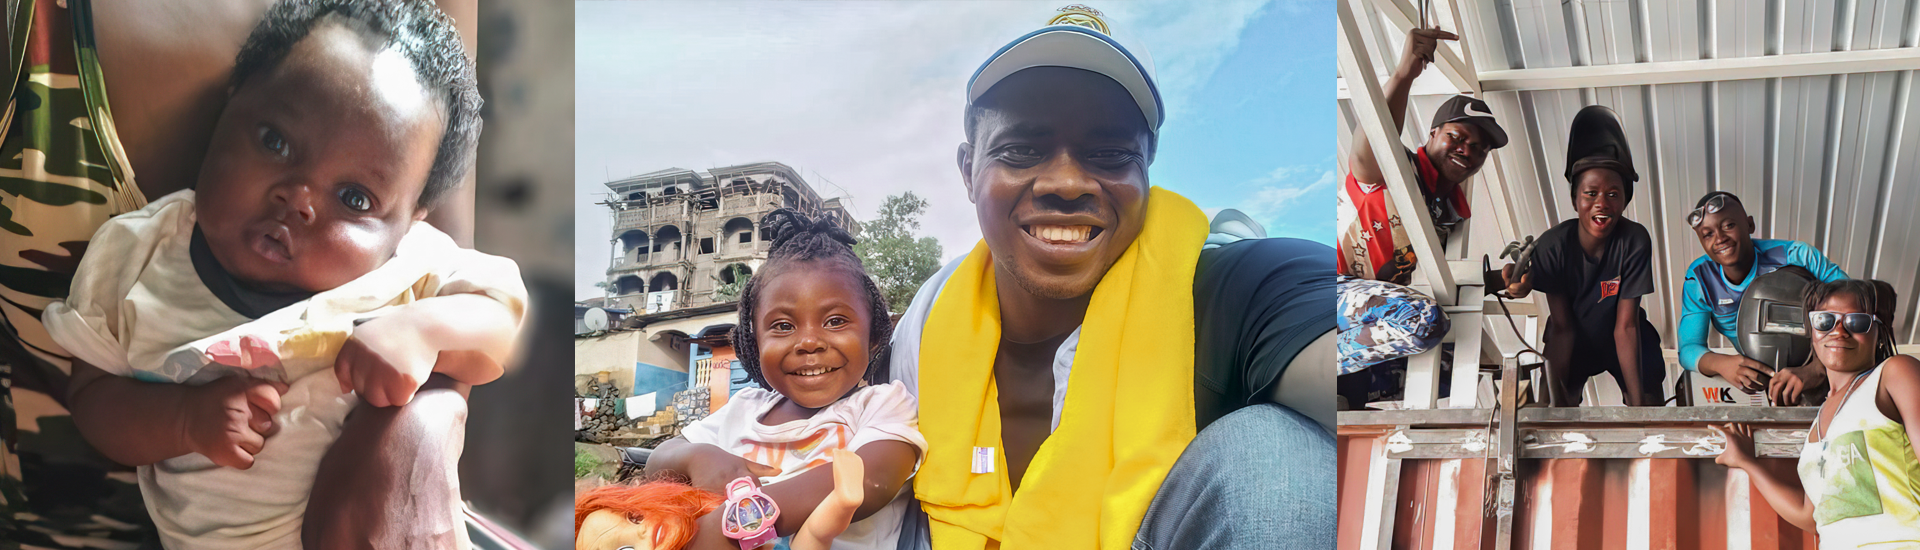 El mensaje lleno de esperanza de Chennor con los niños en situación de calle a su regreso a Sierra Leona